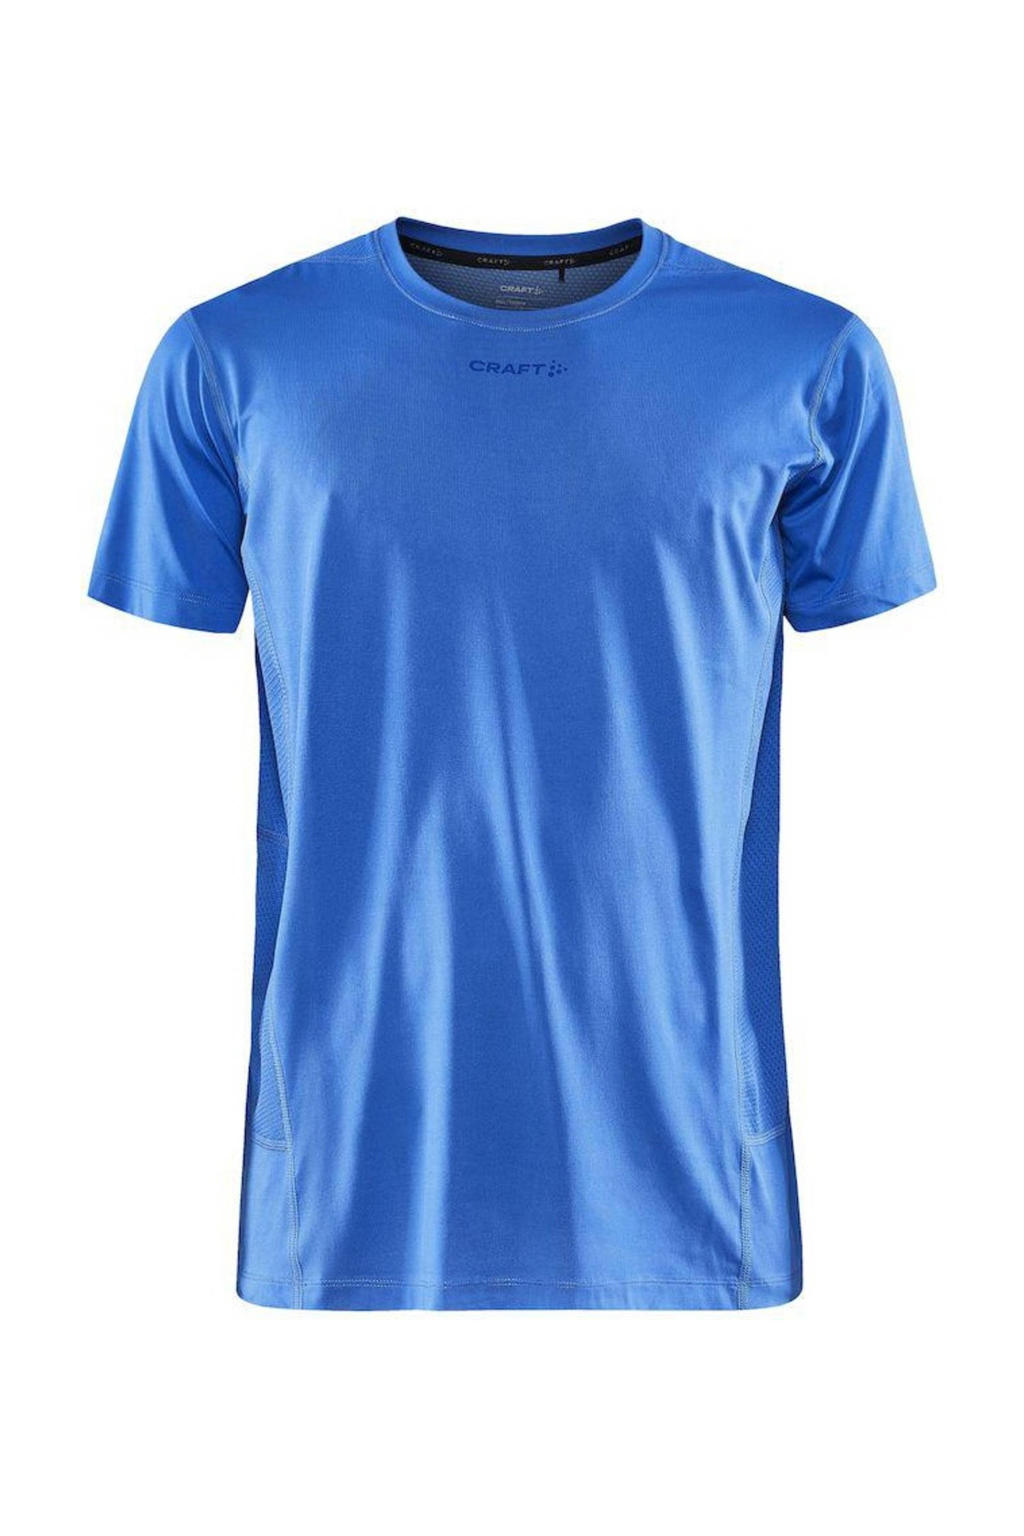 Blauwe heren Craft sport T-shirt van polyester met korte mouwen en ronde hals